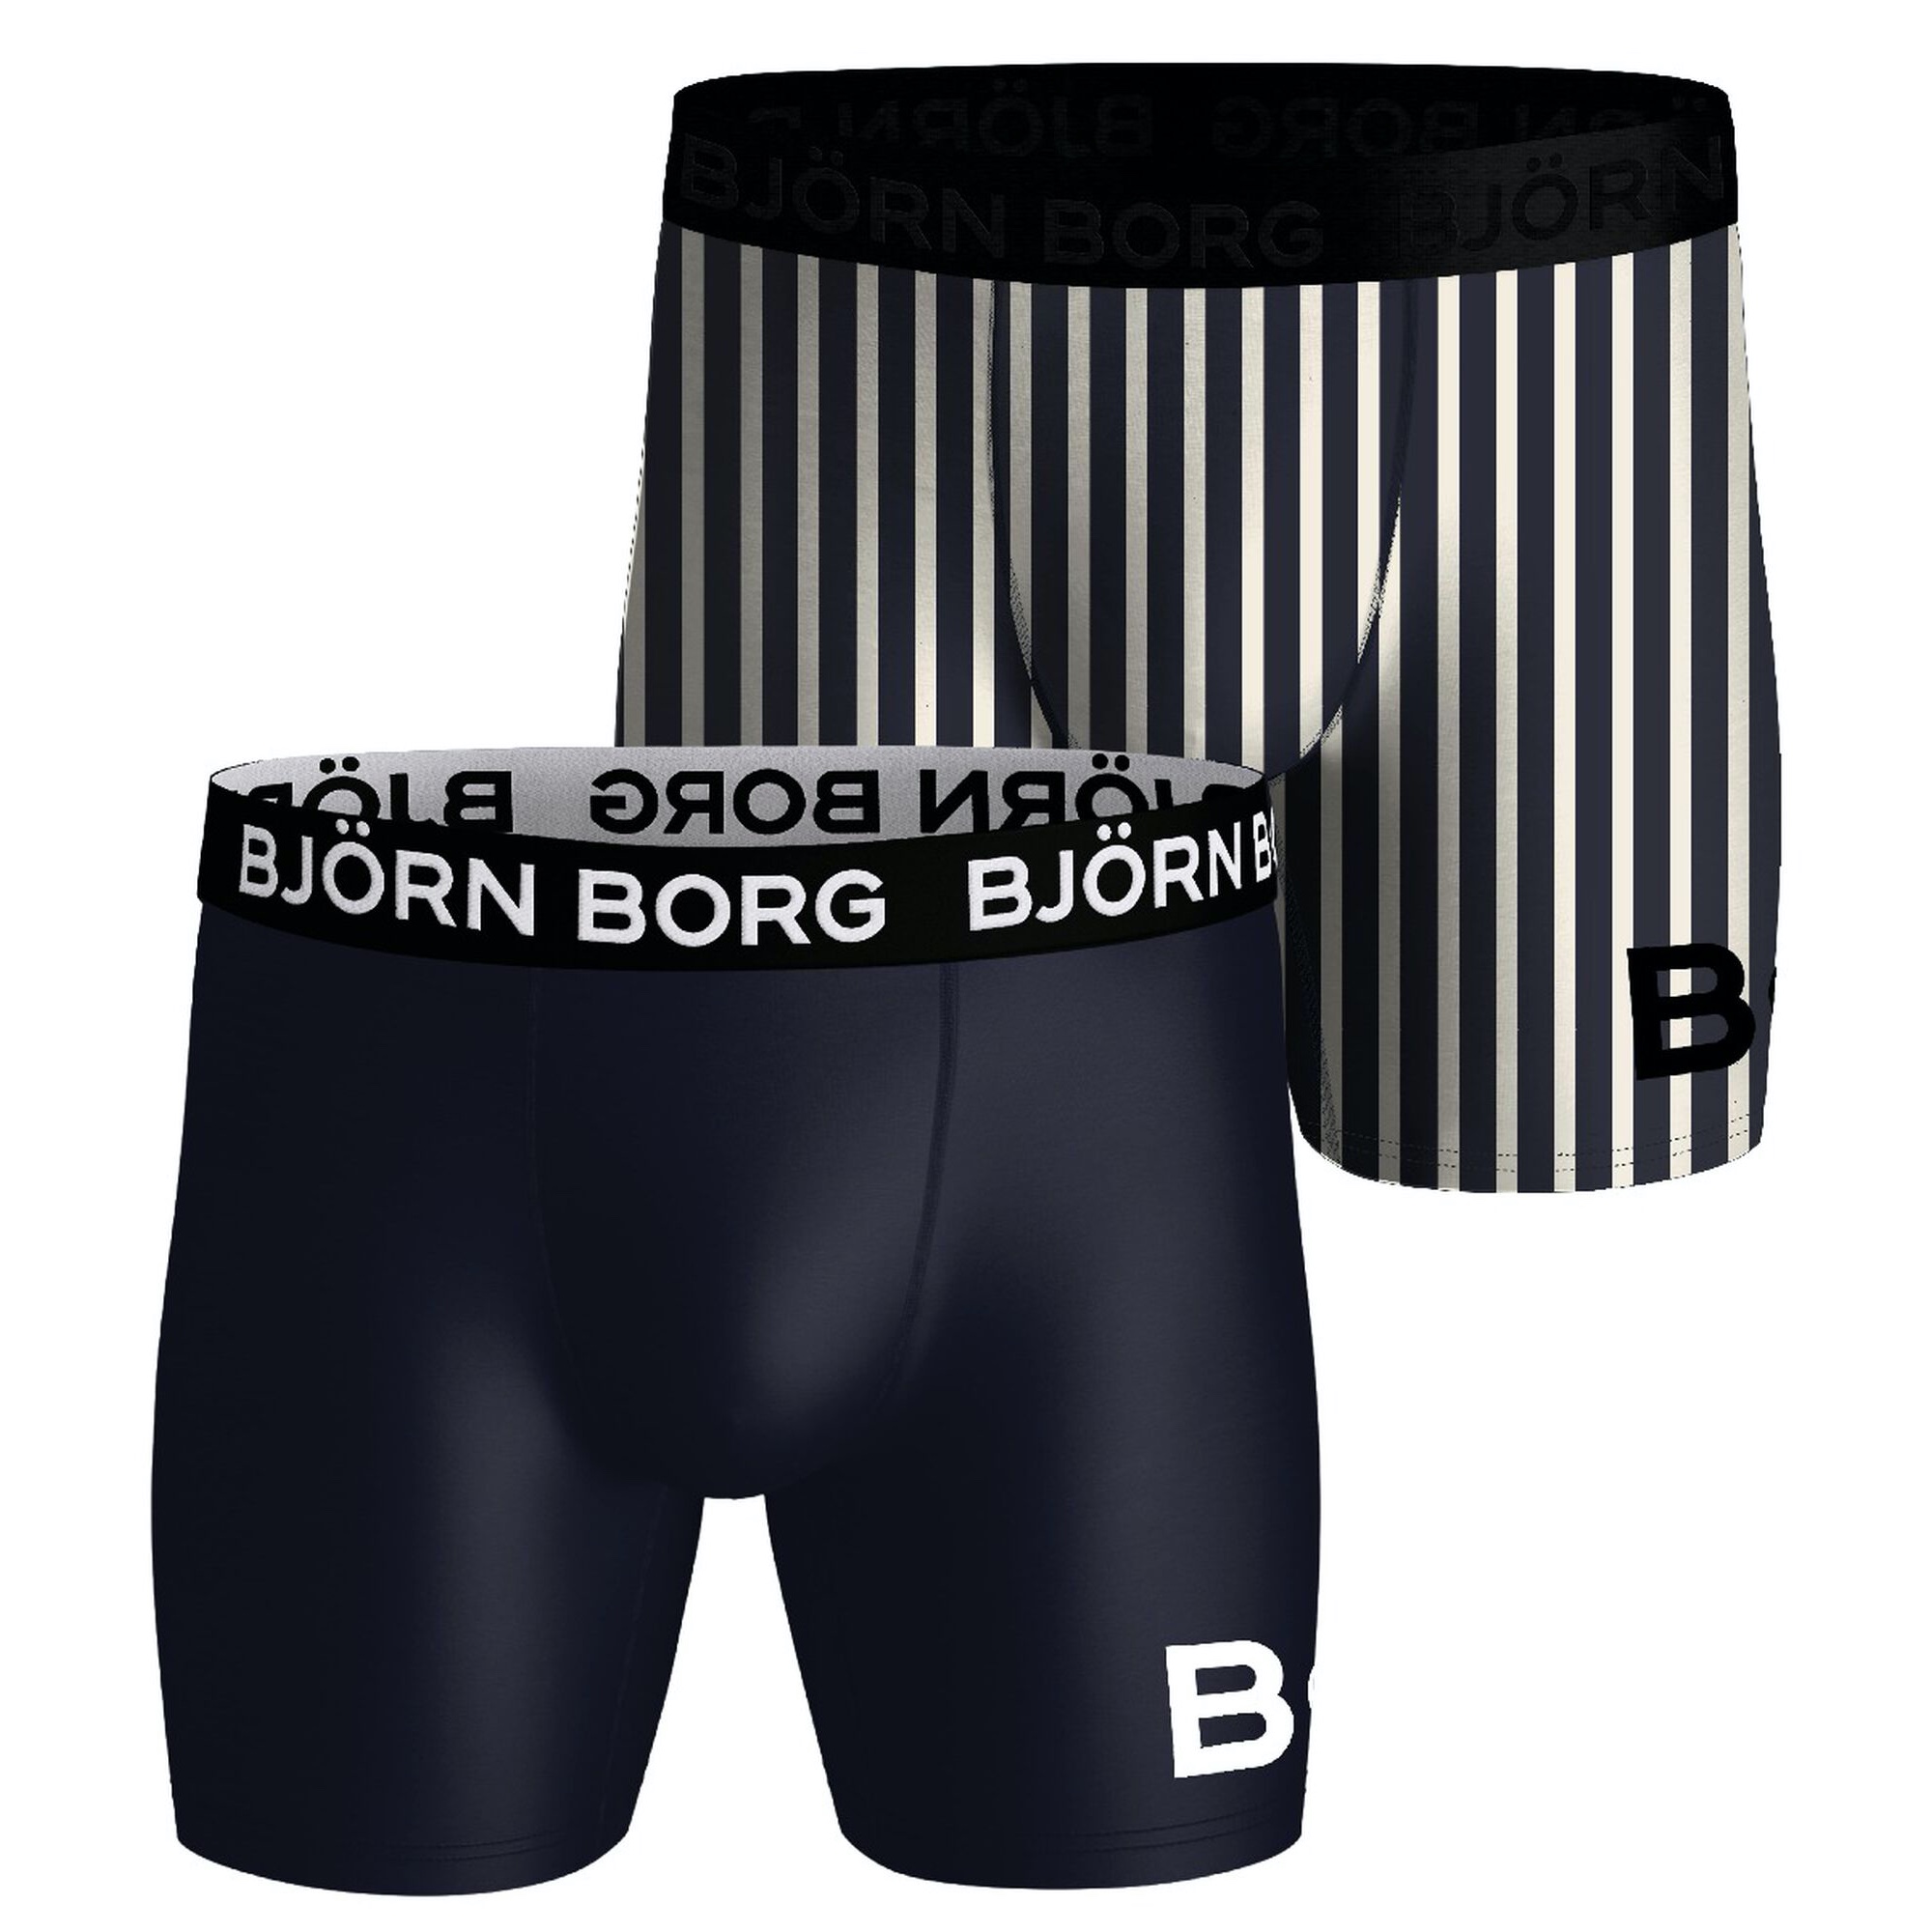 Reiziger Democratie Gespecificeerd Bjorn Borg – Performance Boxer – 2-pack | Tijvooreennieuwe.nl